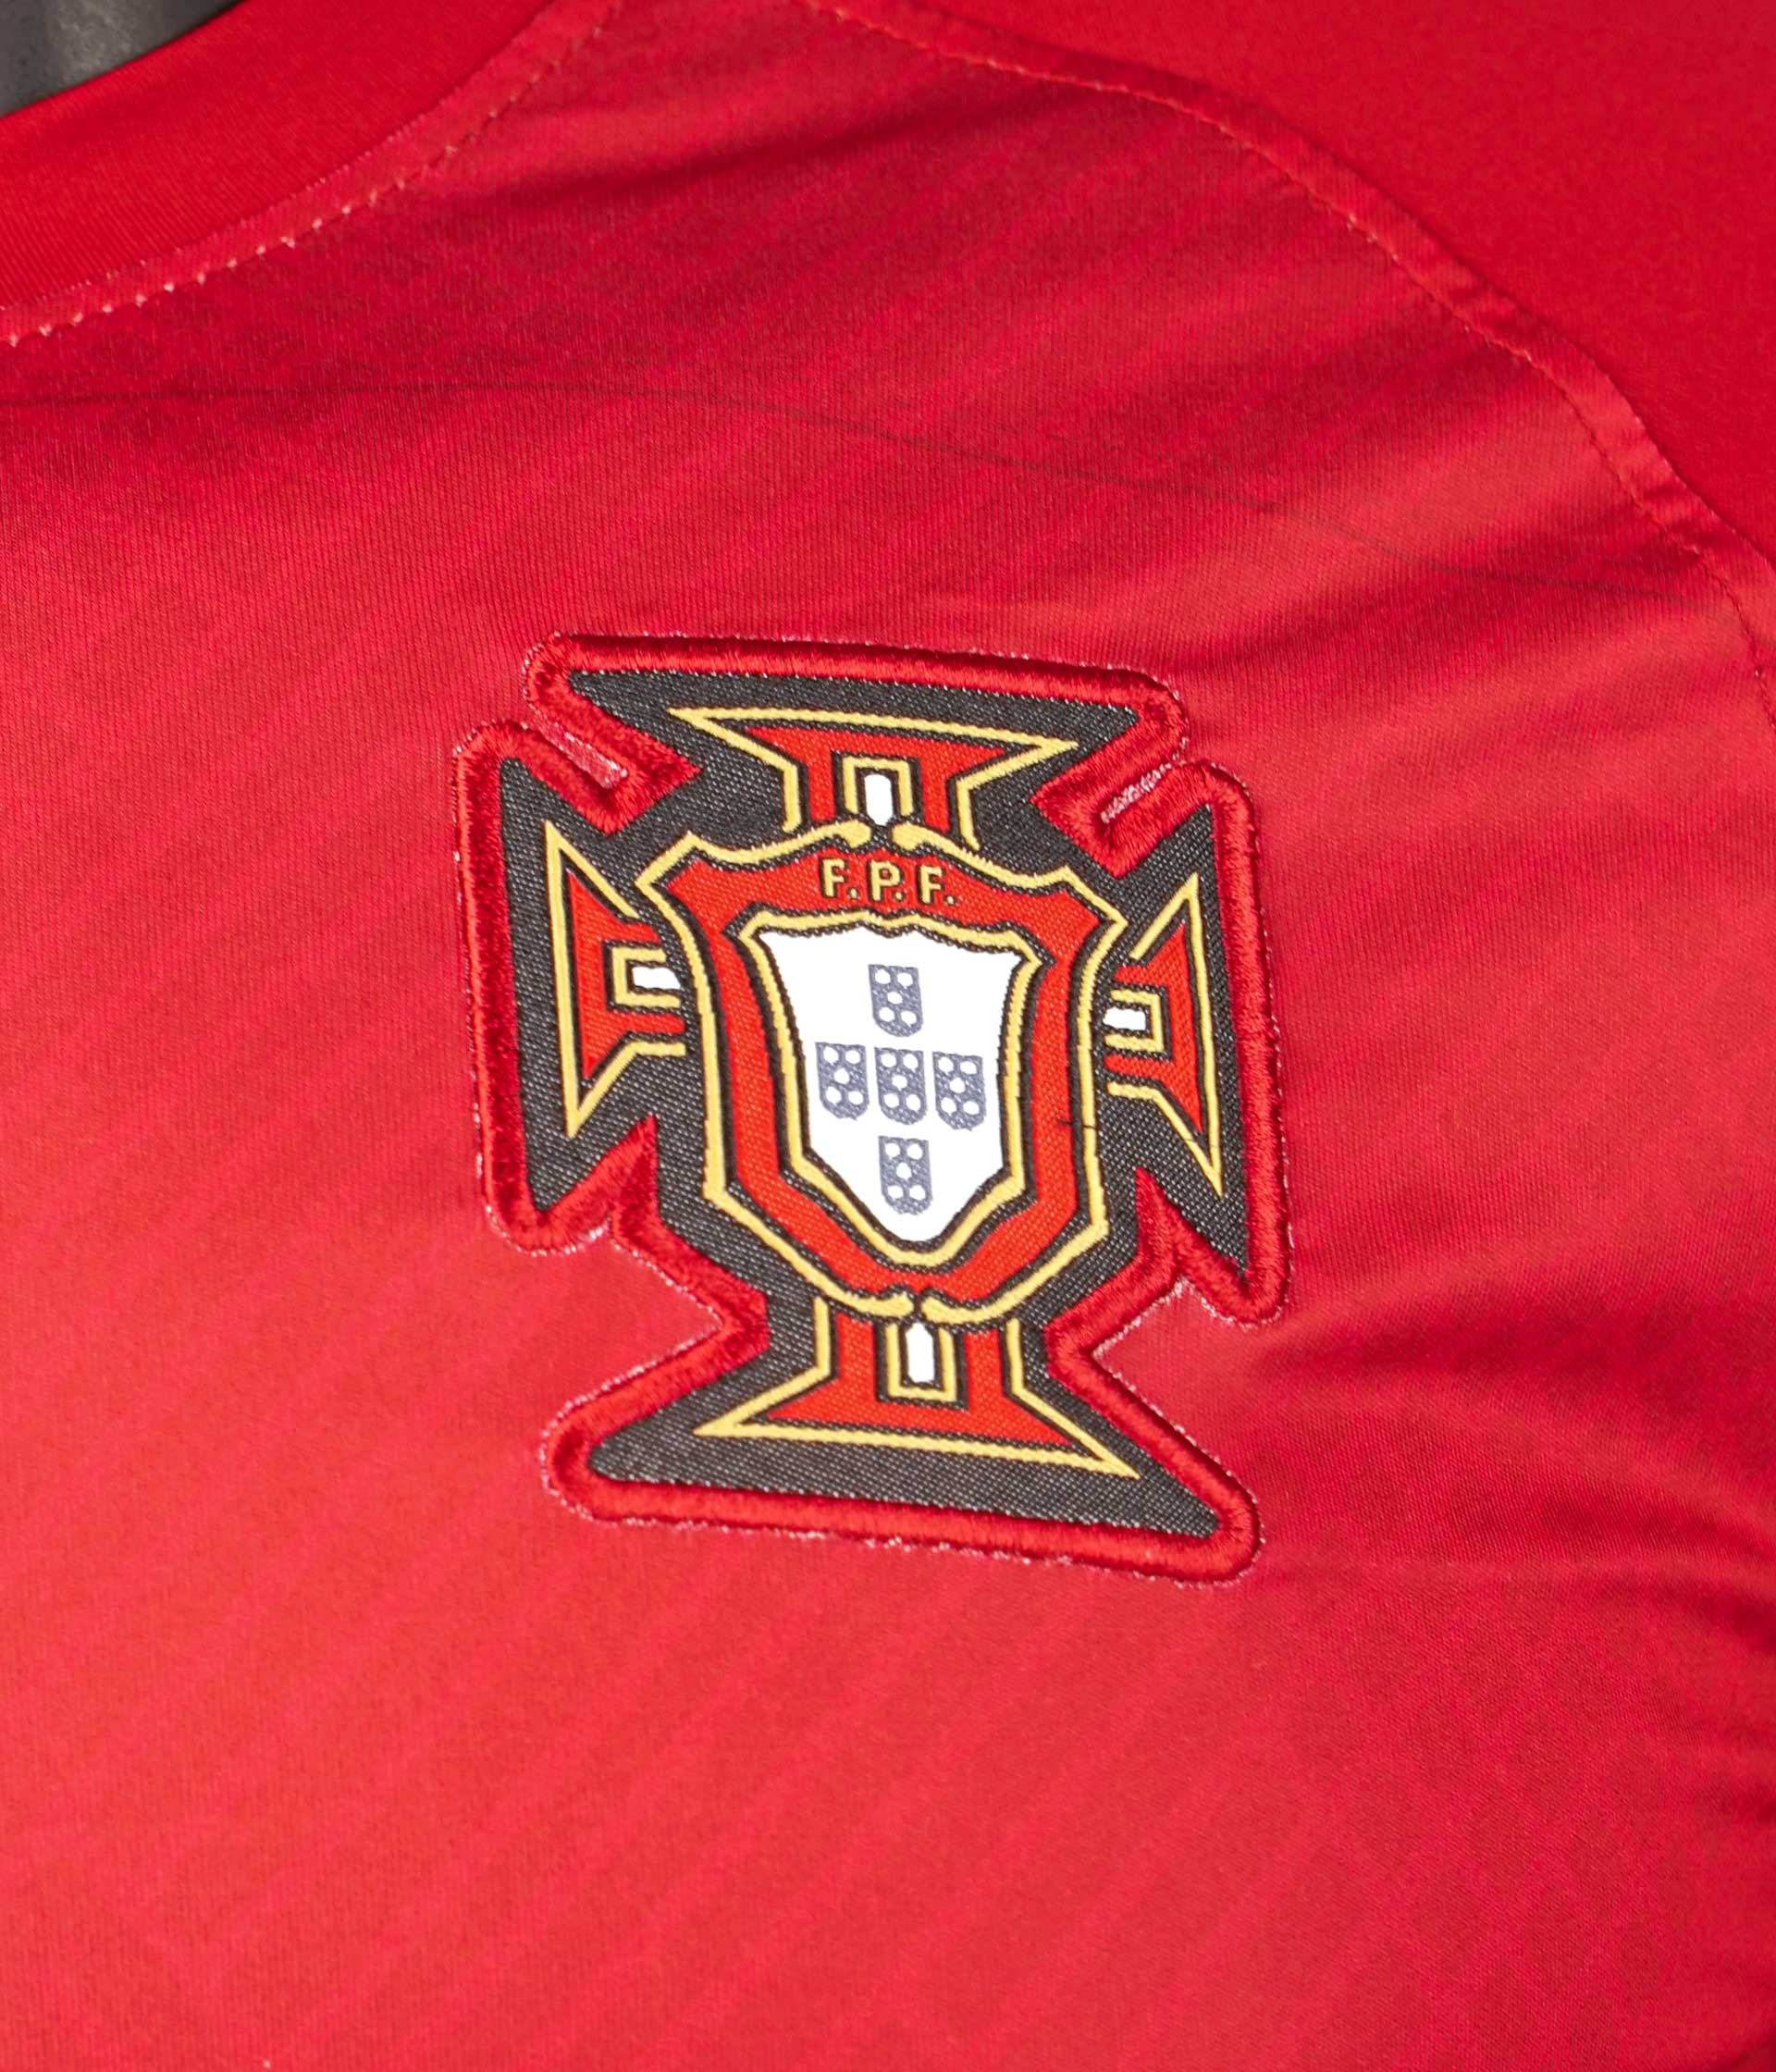 Bồ Đào Nha đã trở thành một trong những đối thủ mạnh mẽ của Đội Tuyển Bóng Đá Việt Nam tại các giải đấu quốc tế. Cùng hâm nóng cho các trận đấu cập nhật nhất với áo đấu của Đội Tuyển Bóng Đá Bồ Đào Nha tuyệt đẹp!